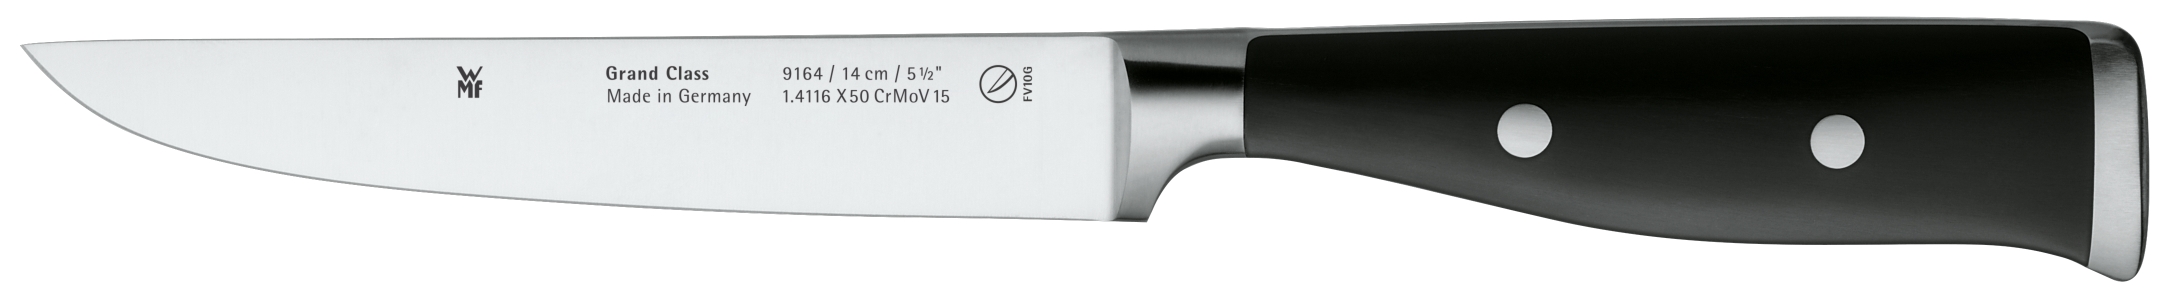 Универсальный нож Grand Class 14 см оголовок для скважин универсальный